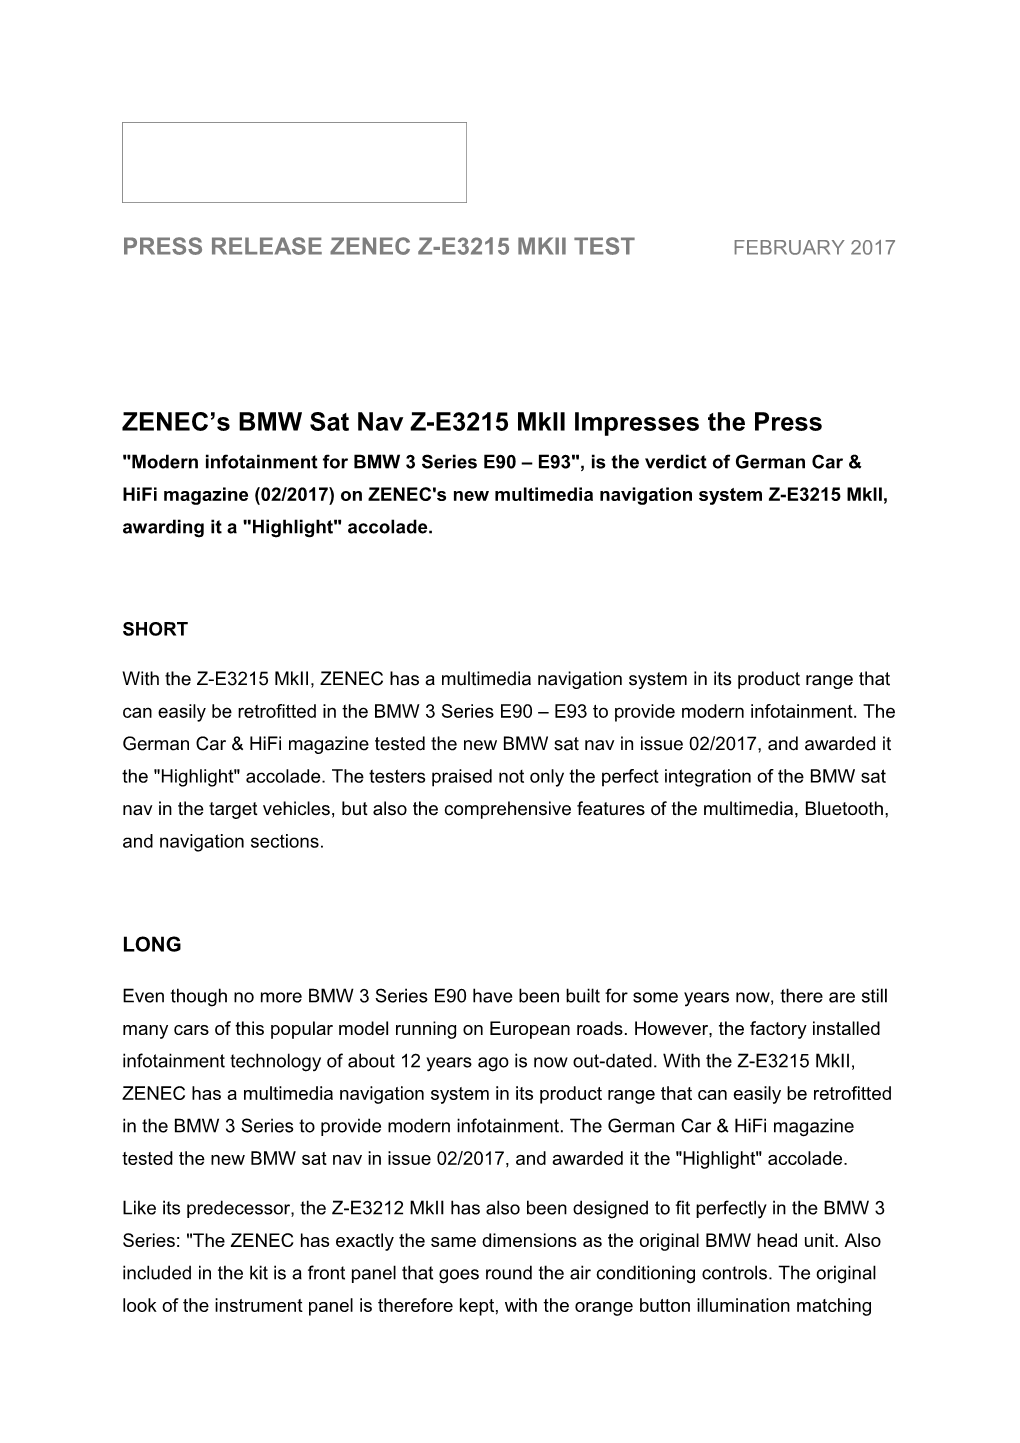 ZENEC S BMW Sat Nav Z-E3215 Mkii Impresses the Press